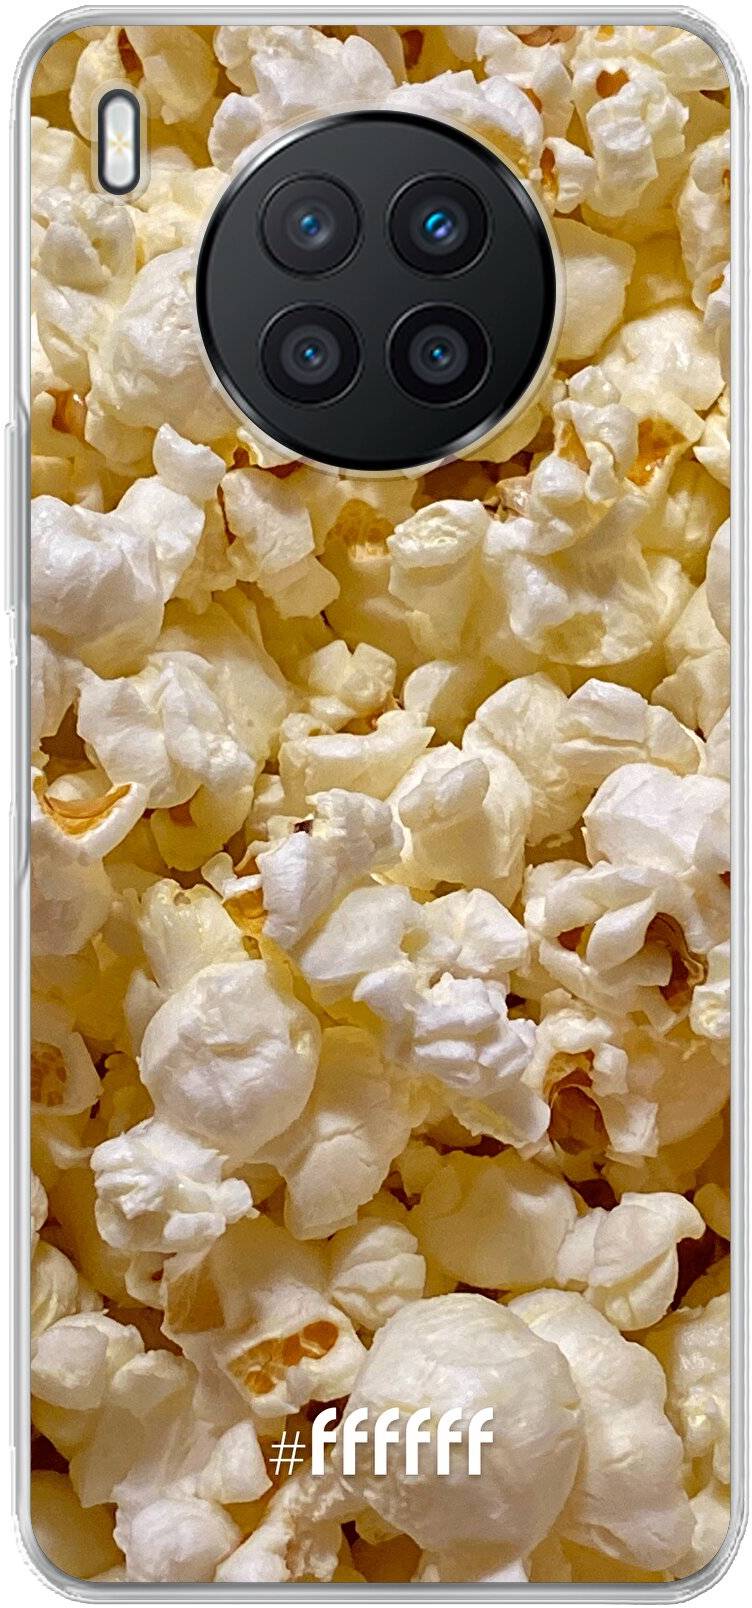 Popcorn Nova 8i